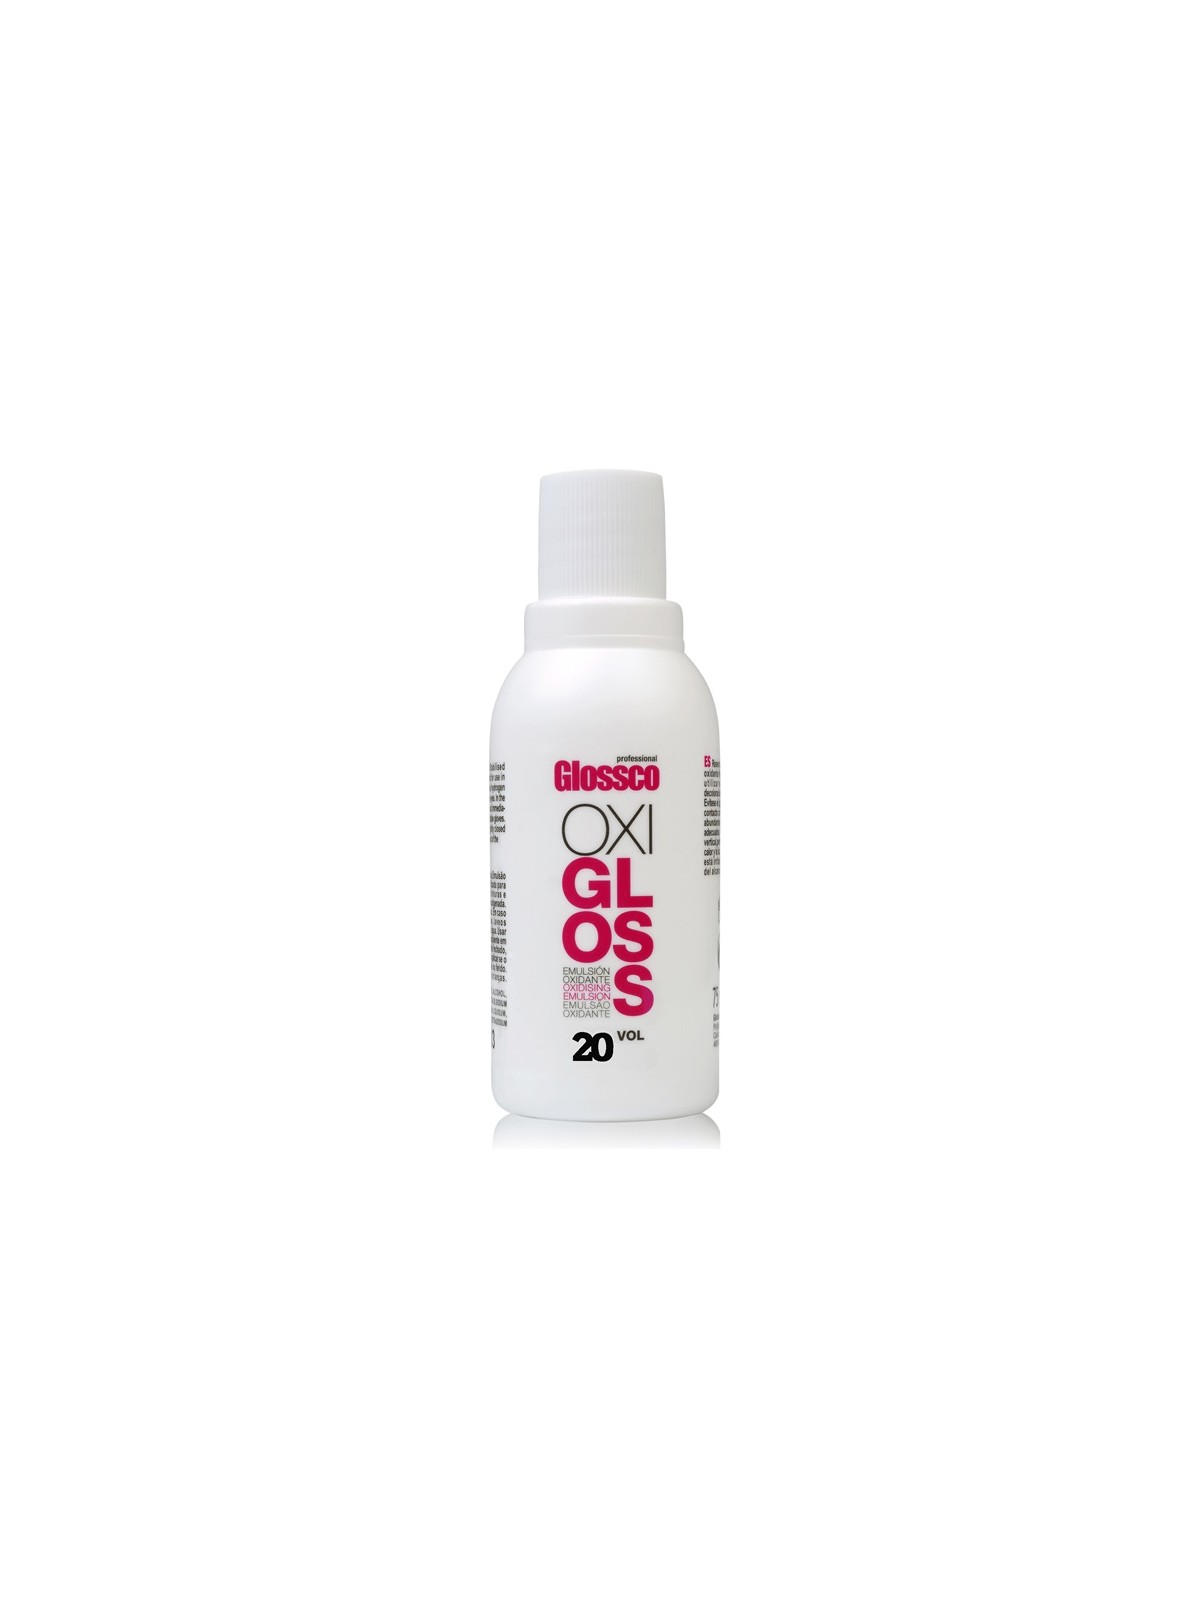 Comprar Glossco Oxidante 20 vol OxiGloss 75ml en Inicio por sólo 0,97 € o un precio específico de 0,97 € en Thalie Care